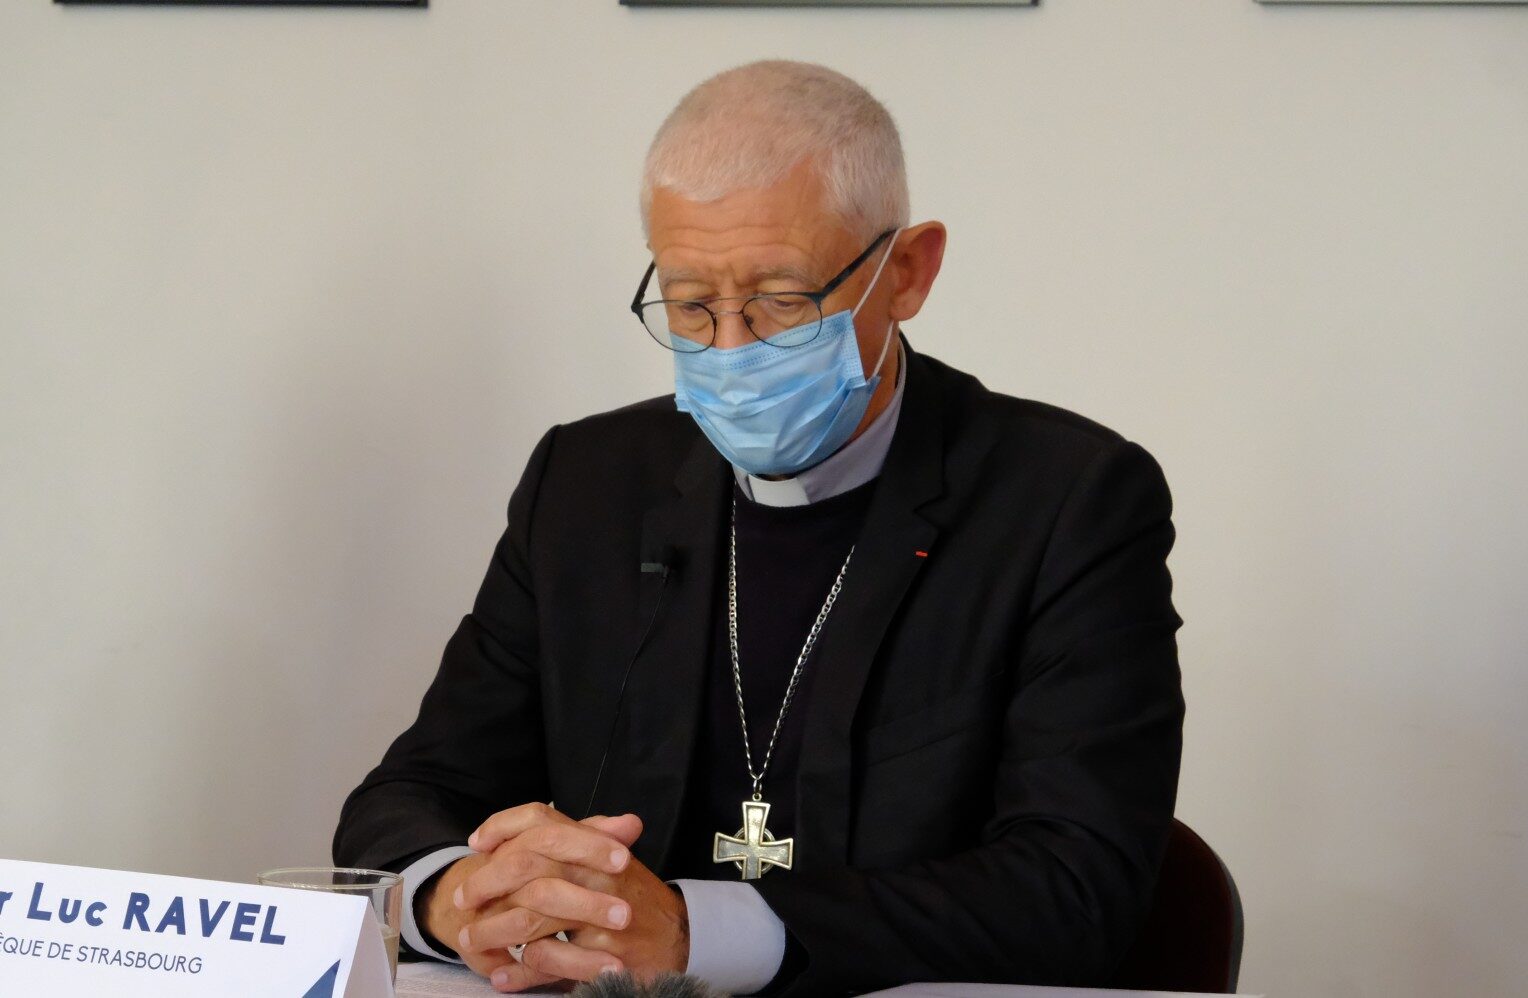 Abus sexuels dans l’Église : l’archevêque de Strasbourg préserve la réputation d’un agresseur